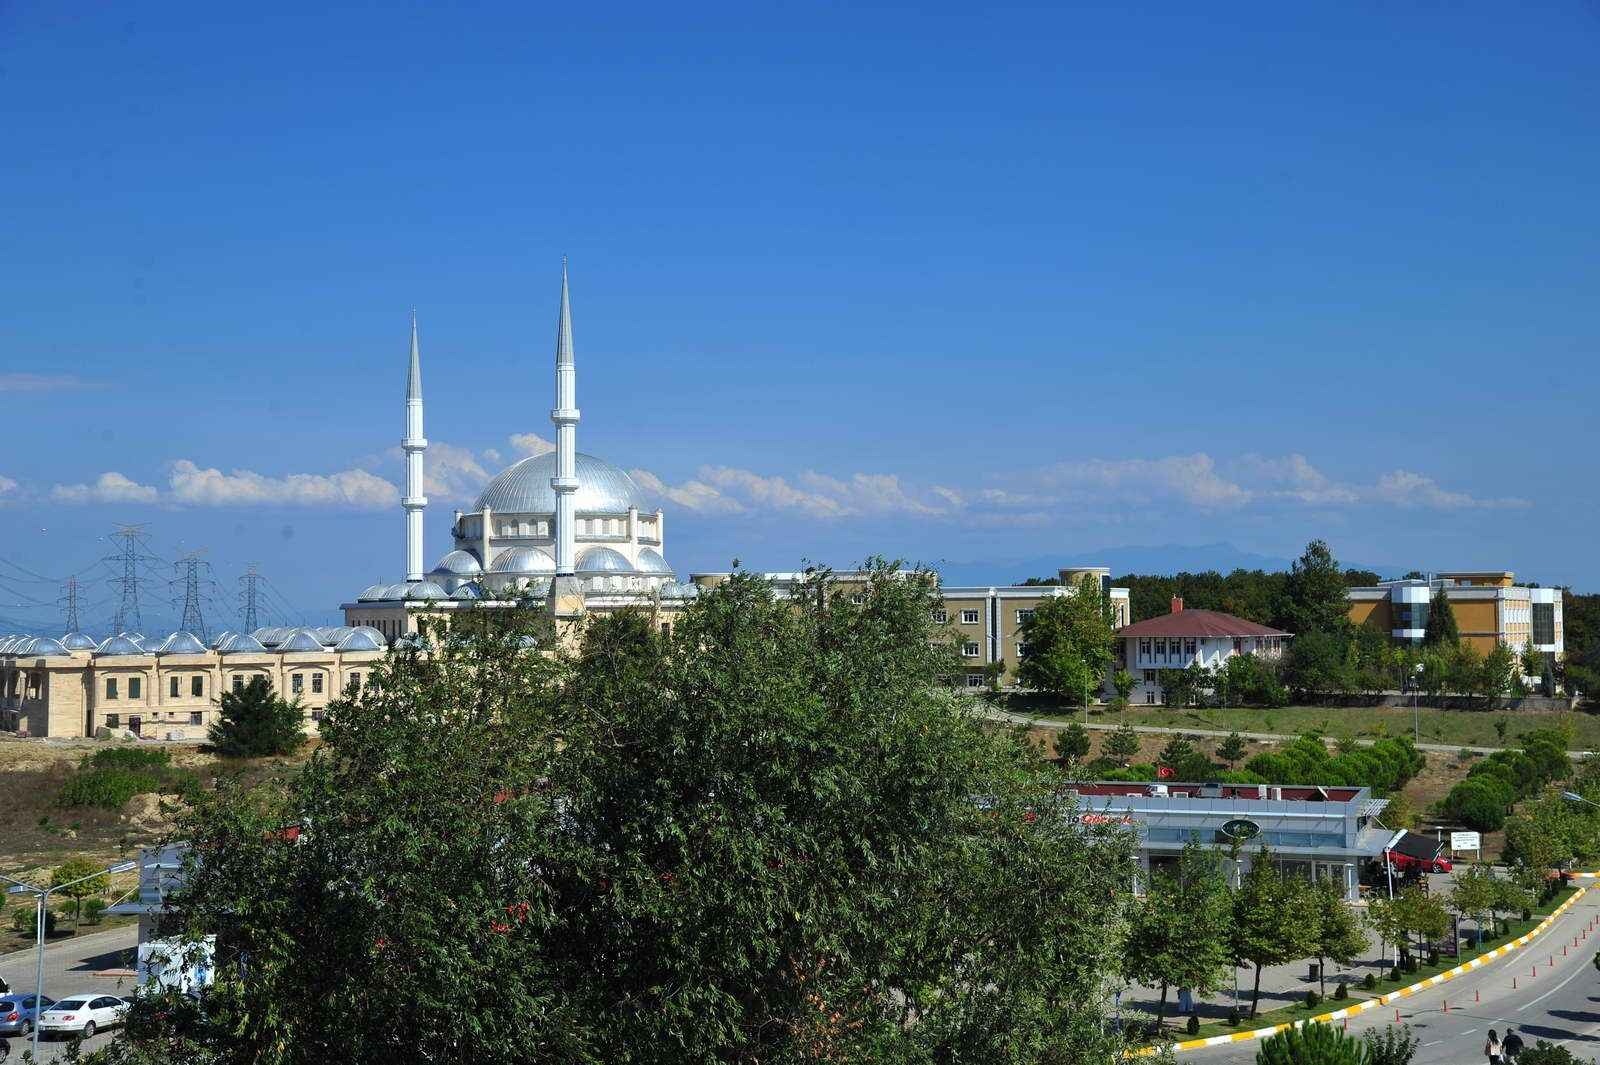 تركيا واحدة من الدول التي تختلف فيها مواقيت الصلاة بين مدينة وأخرى